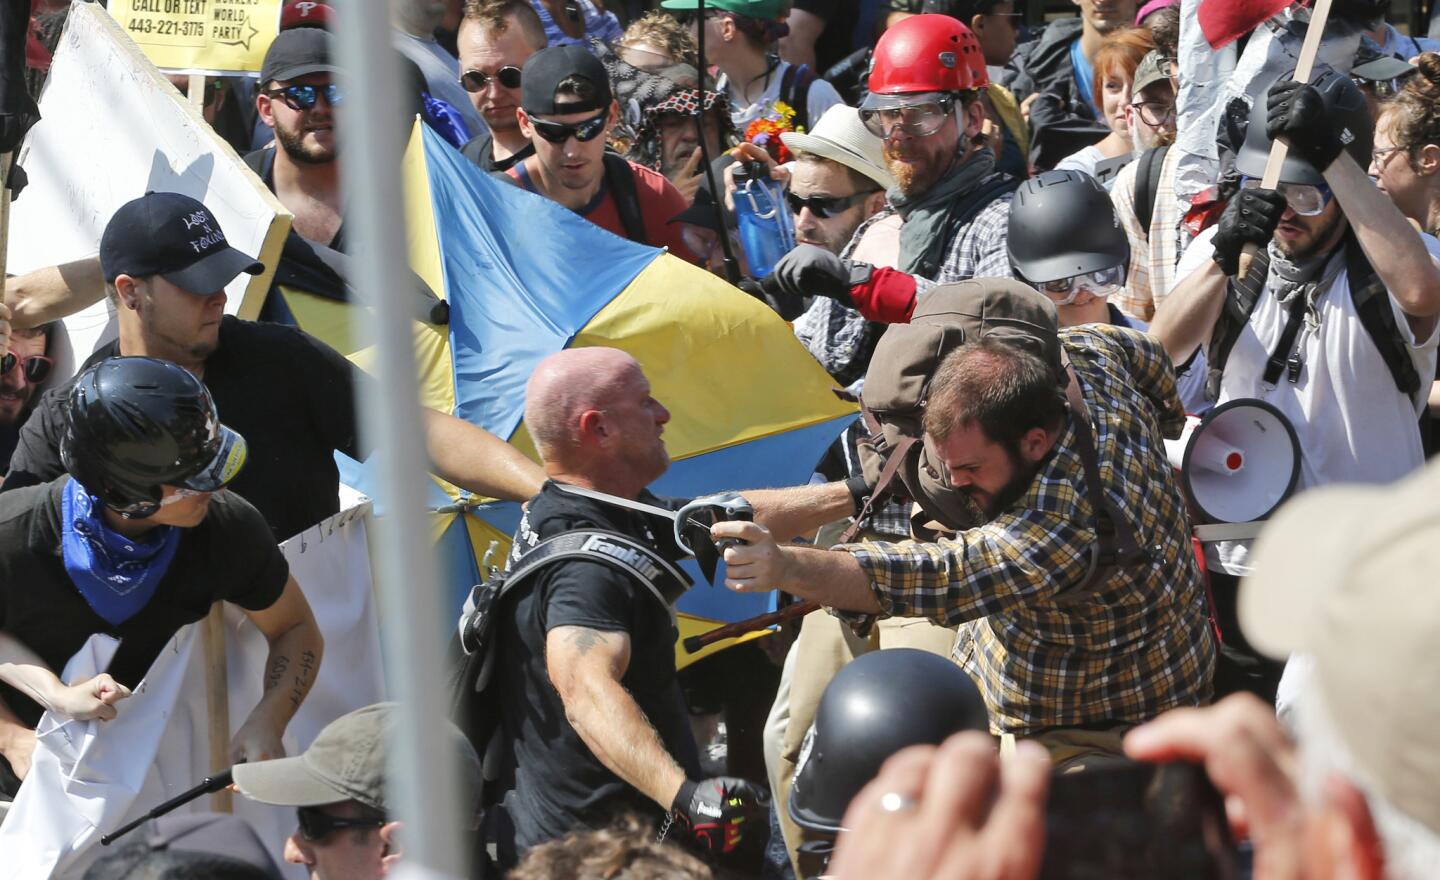 Nacionalistas blancos y contramanifestantes se enfrentan a la entrada del parque Lee en Charlottesville, Virginia.